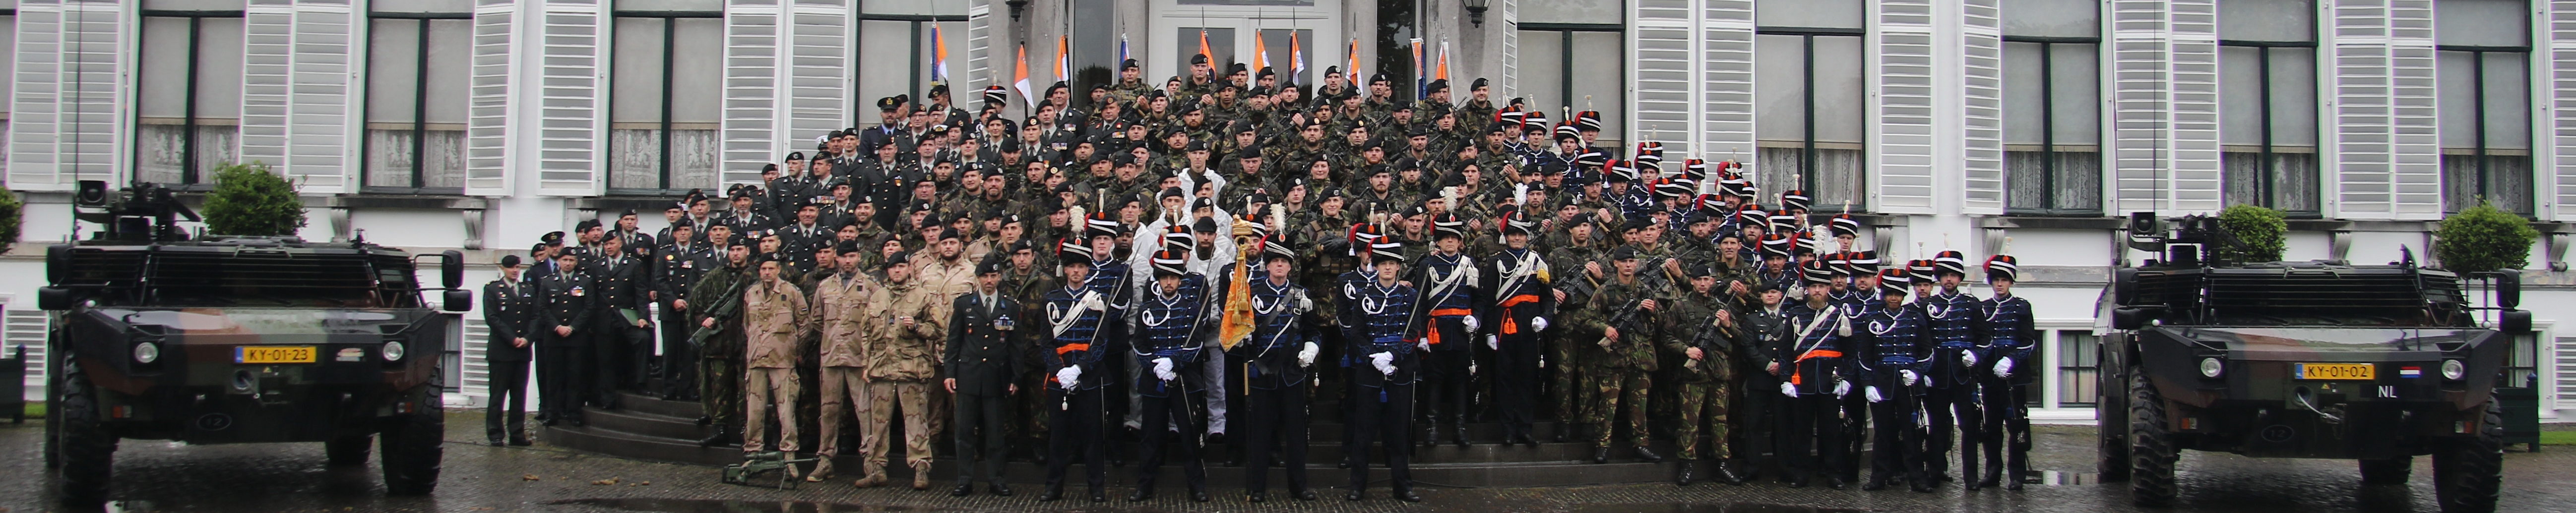 Regiment Huzaren van Boreel